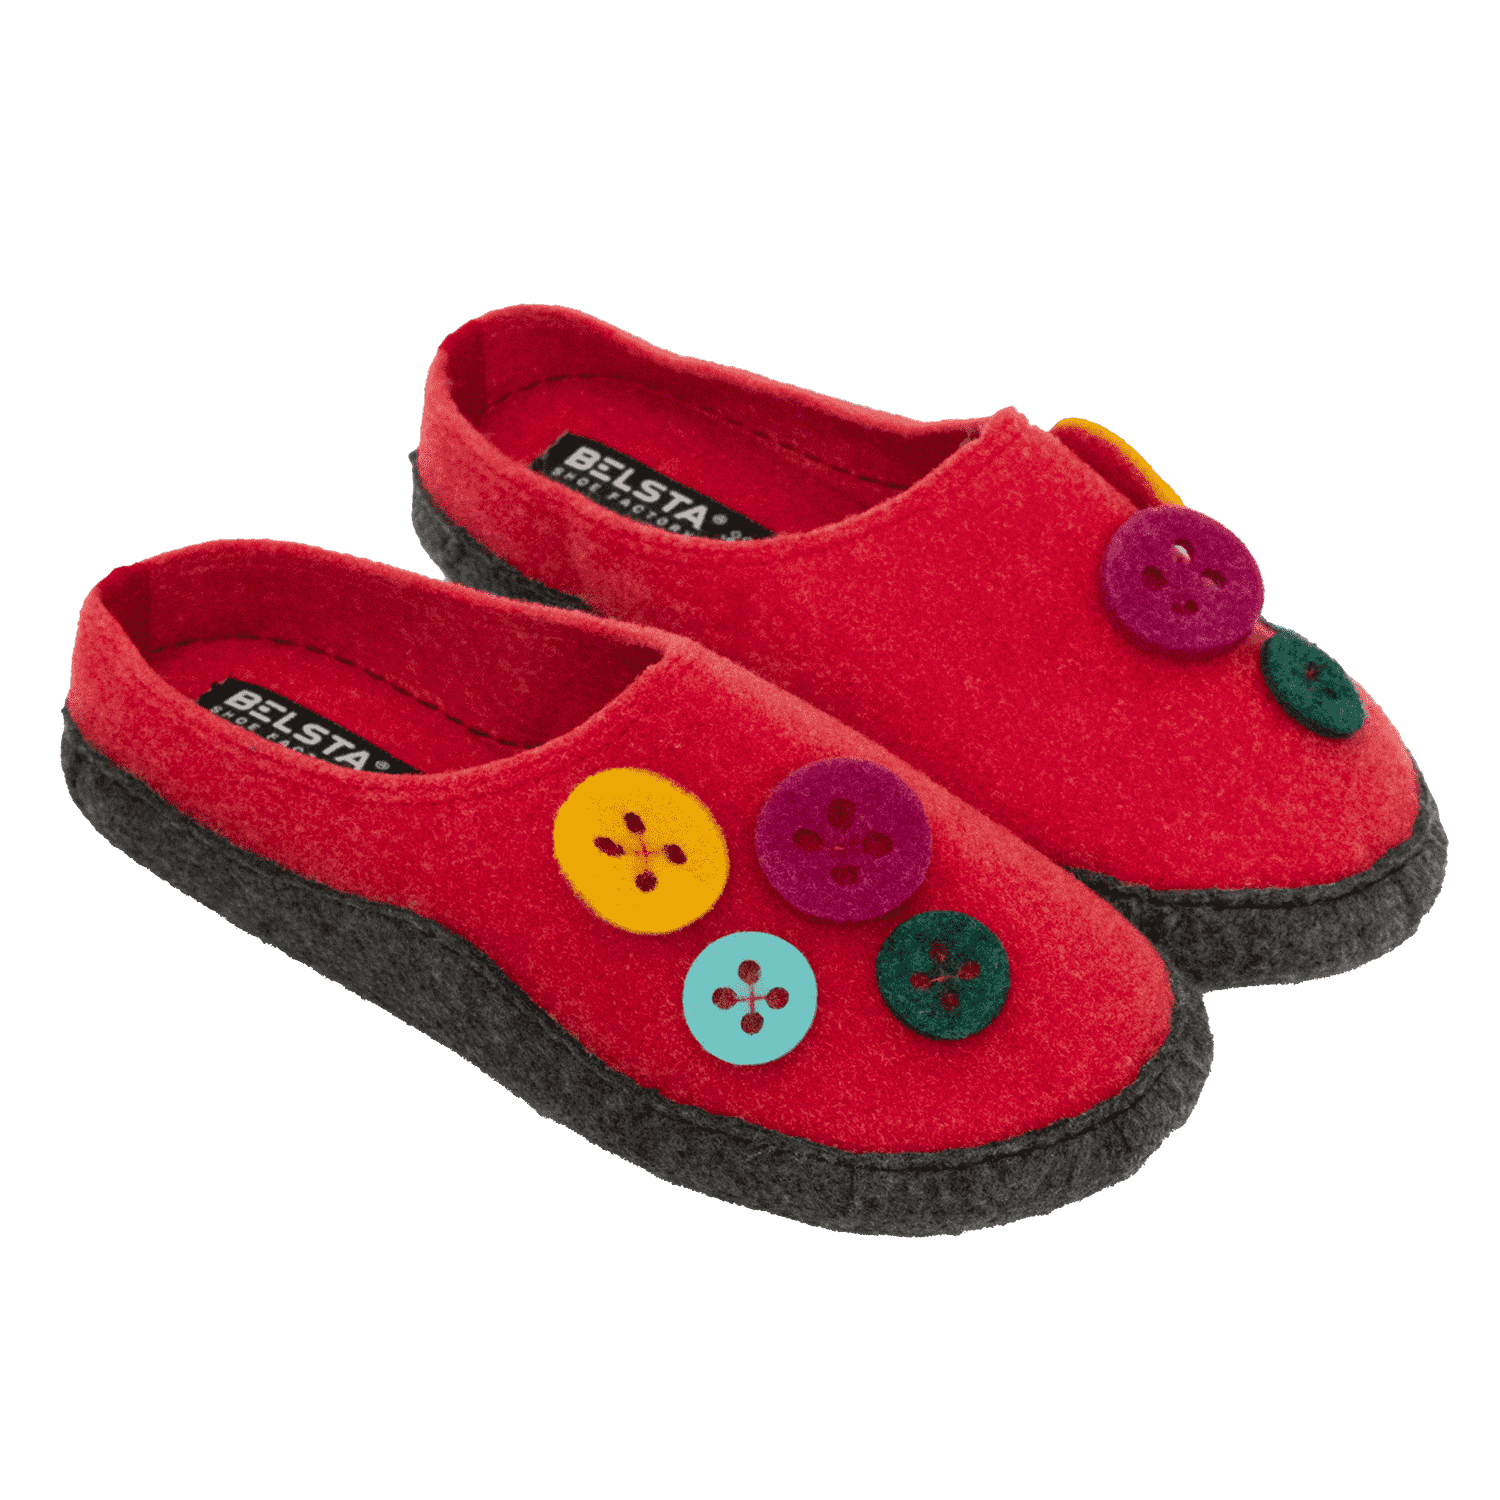 Women's felt slippers BELSTA with buttons - 1